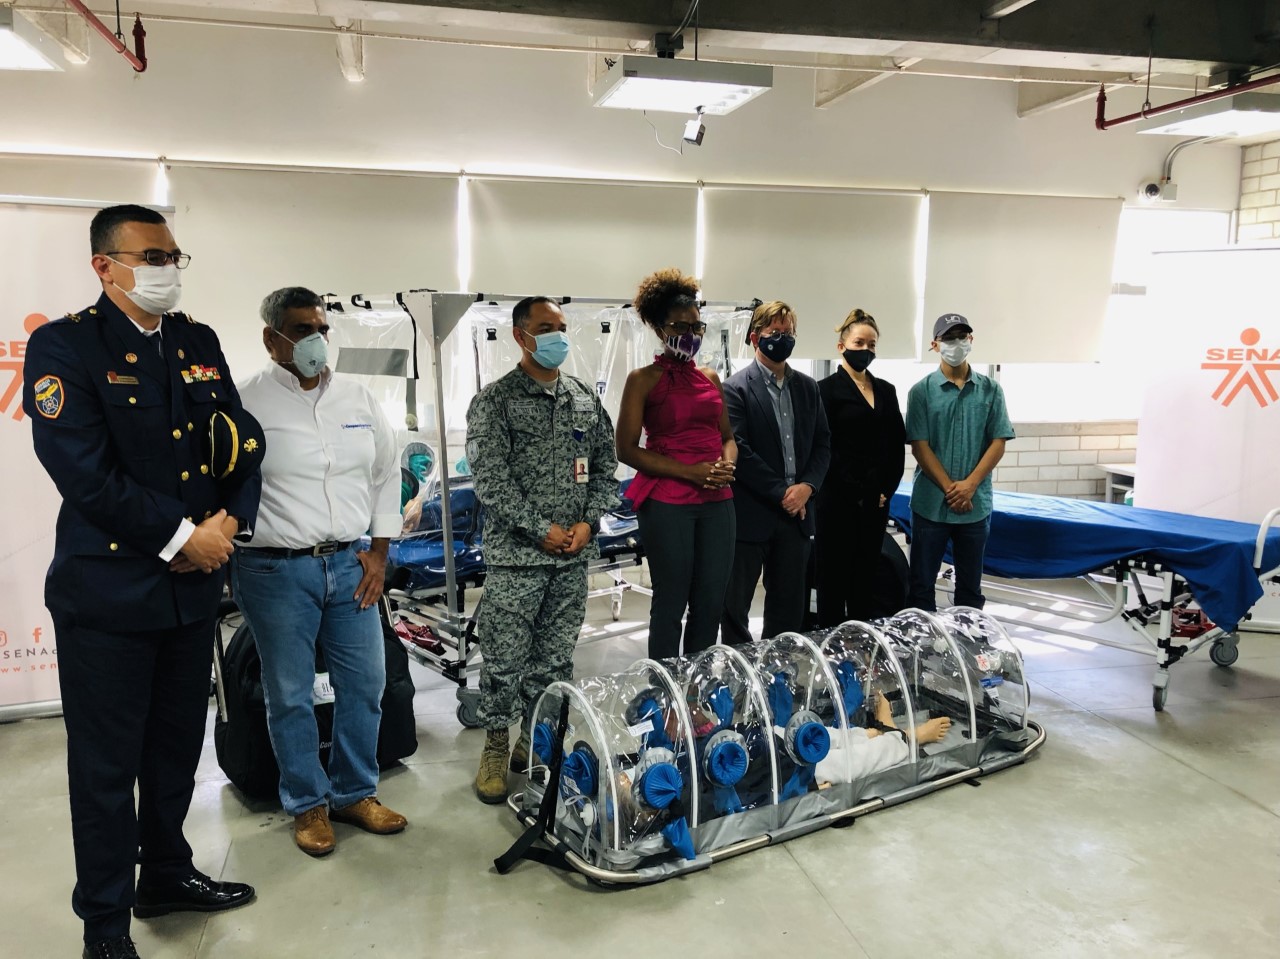 Dos nuevas cápsulas de aislamiento para pacientes con Covid -19 fueron entregadas a su Fuerza Aérea 